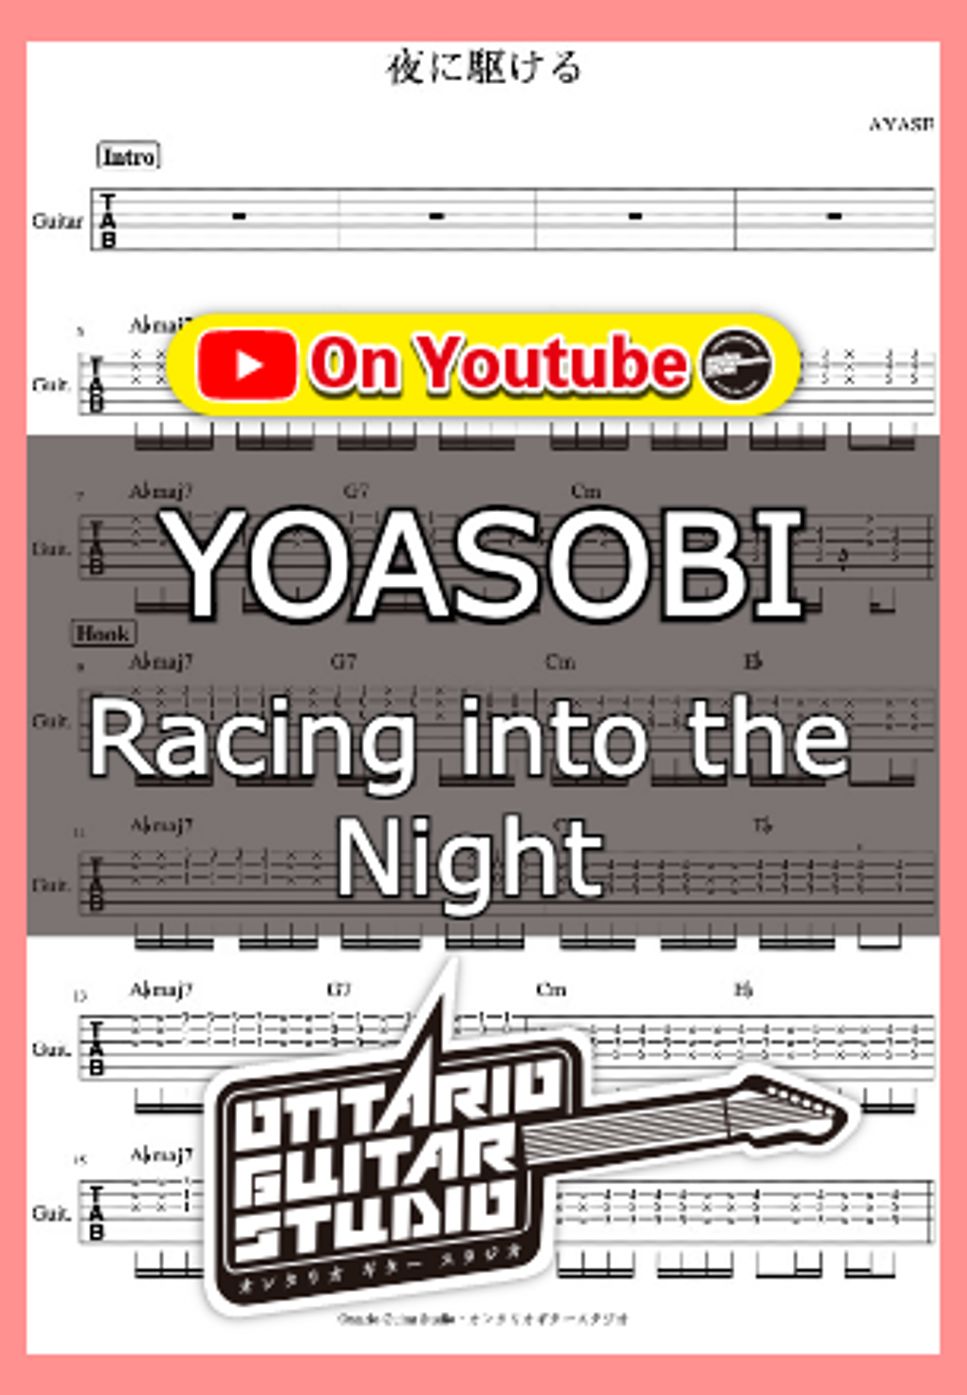 YOASOBI - Racing into the Night (Yoru ni kakeru) by Ontario Guitar Studio